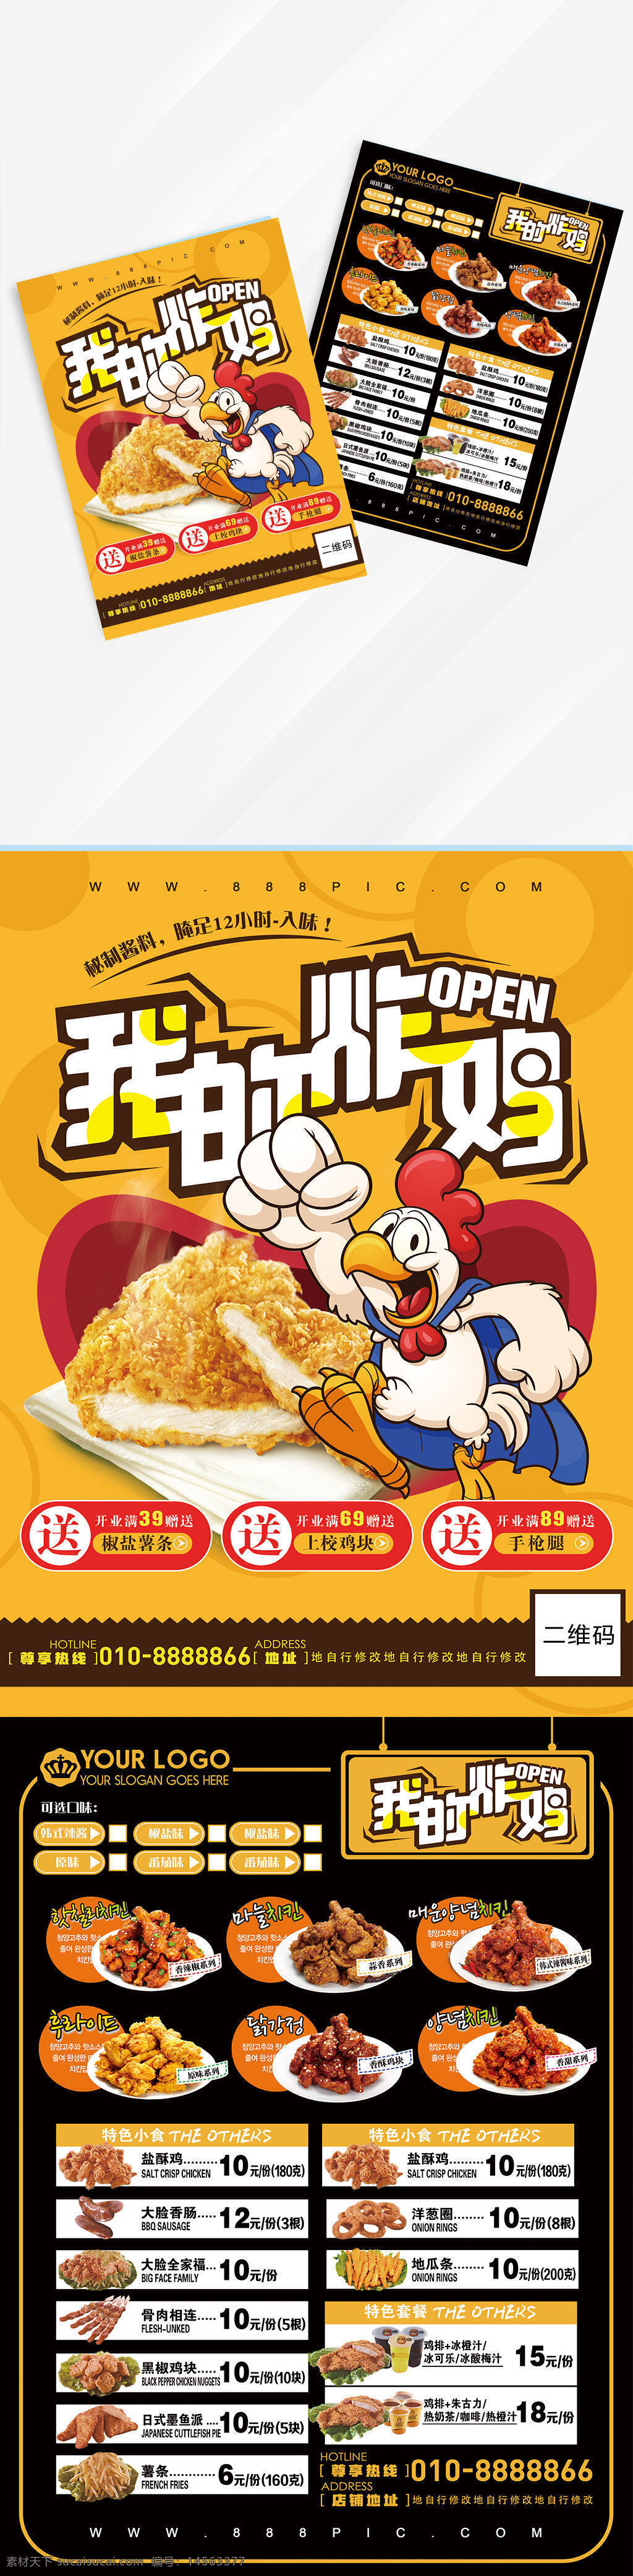 炸鸡 炸鸡汉堡 快餐 烤鸡 韩式炸鸡 炸鸡海报 炸鸡广告 鸡 卡通鸡 设计 广告设计